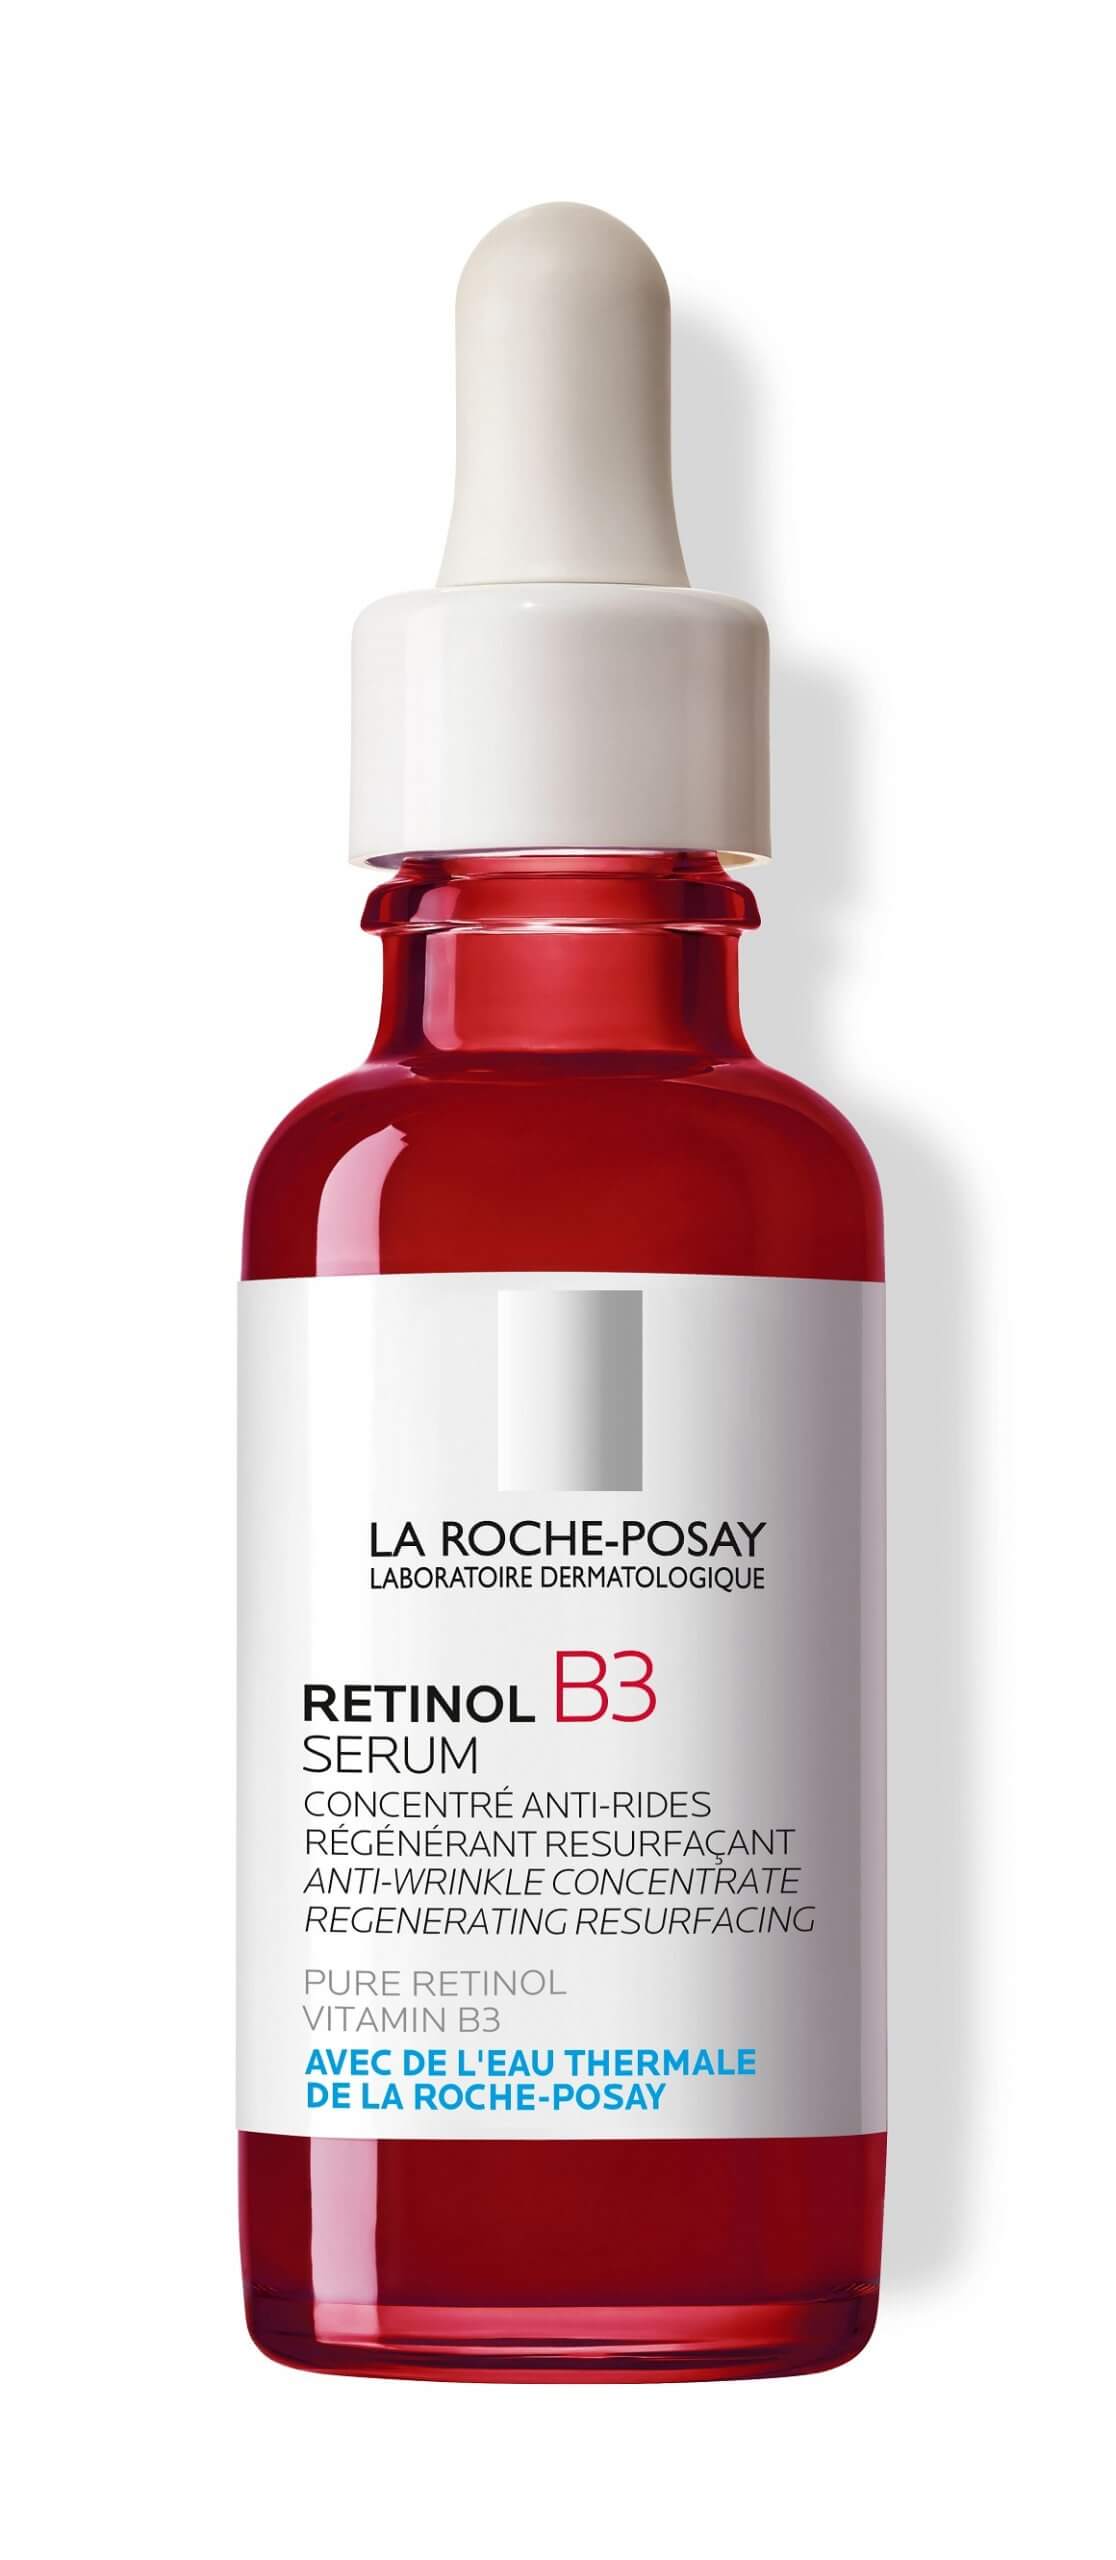 LA ROCHE-POSAY RETINOL B3 Serum (1)